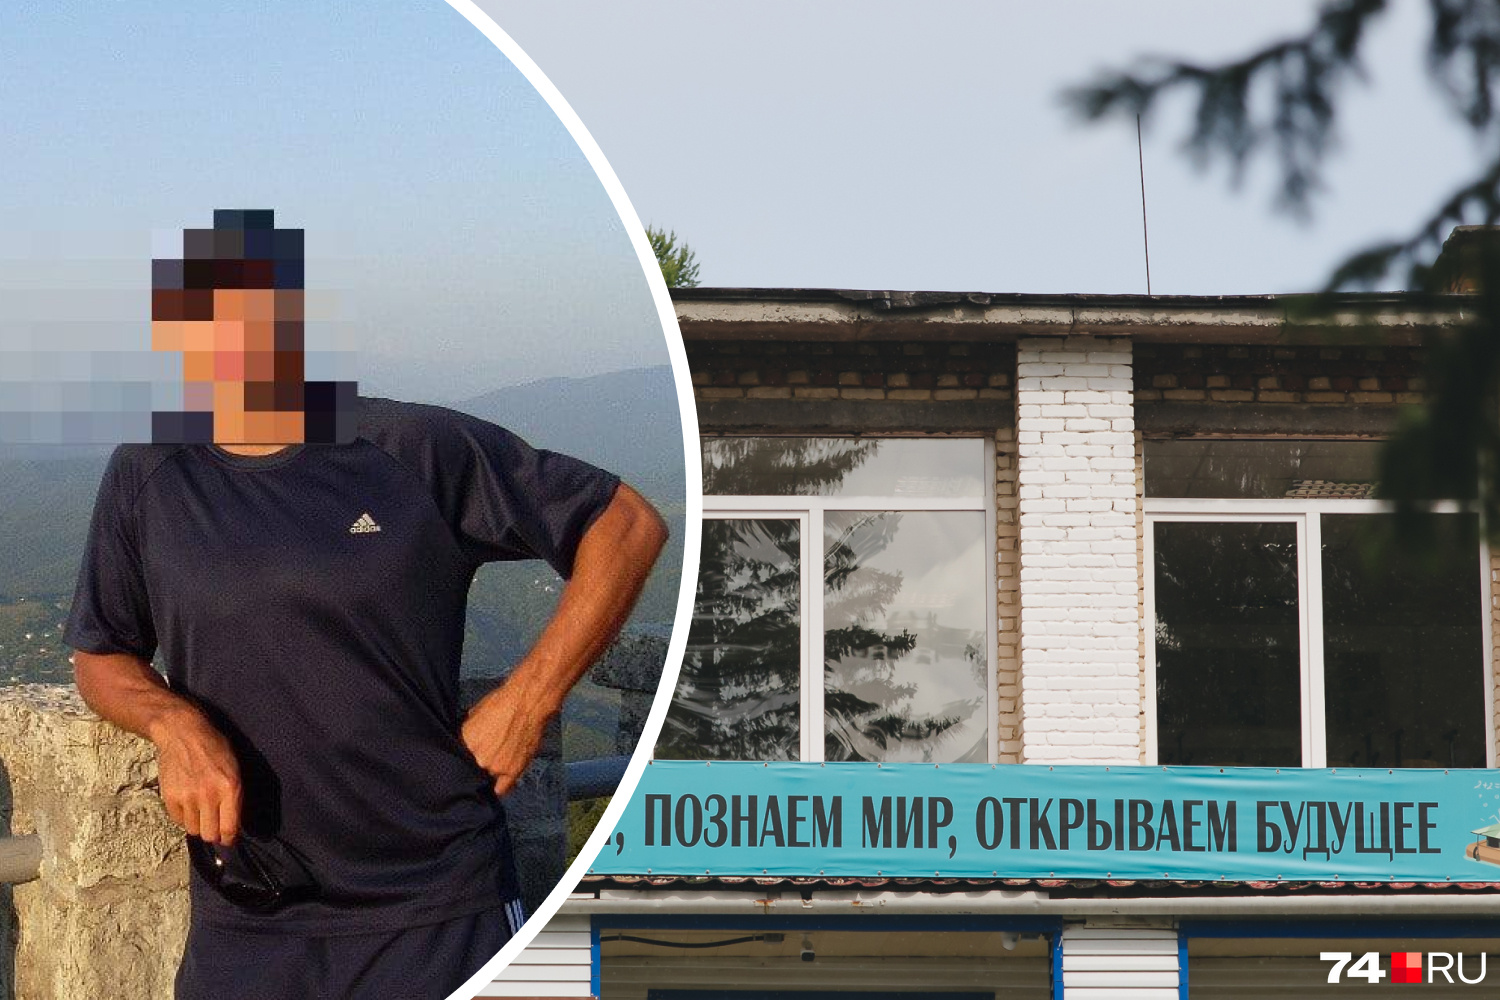 Учителя физкультуры школьница обвинила в домогательствах, но дело  прекратили - 8 августа 2022 - v1.ru